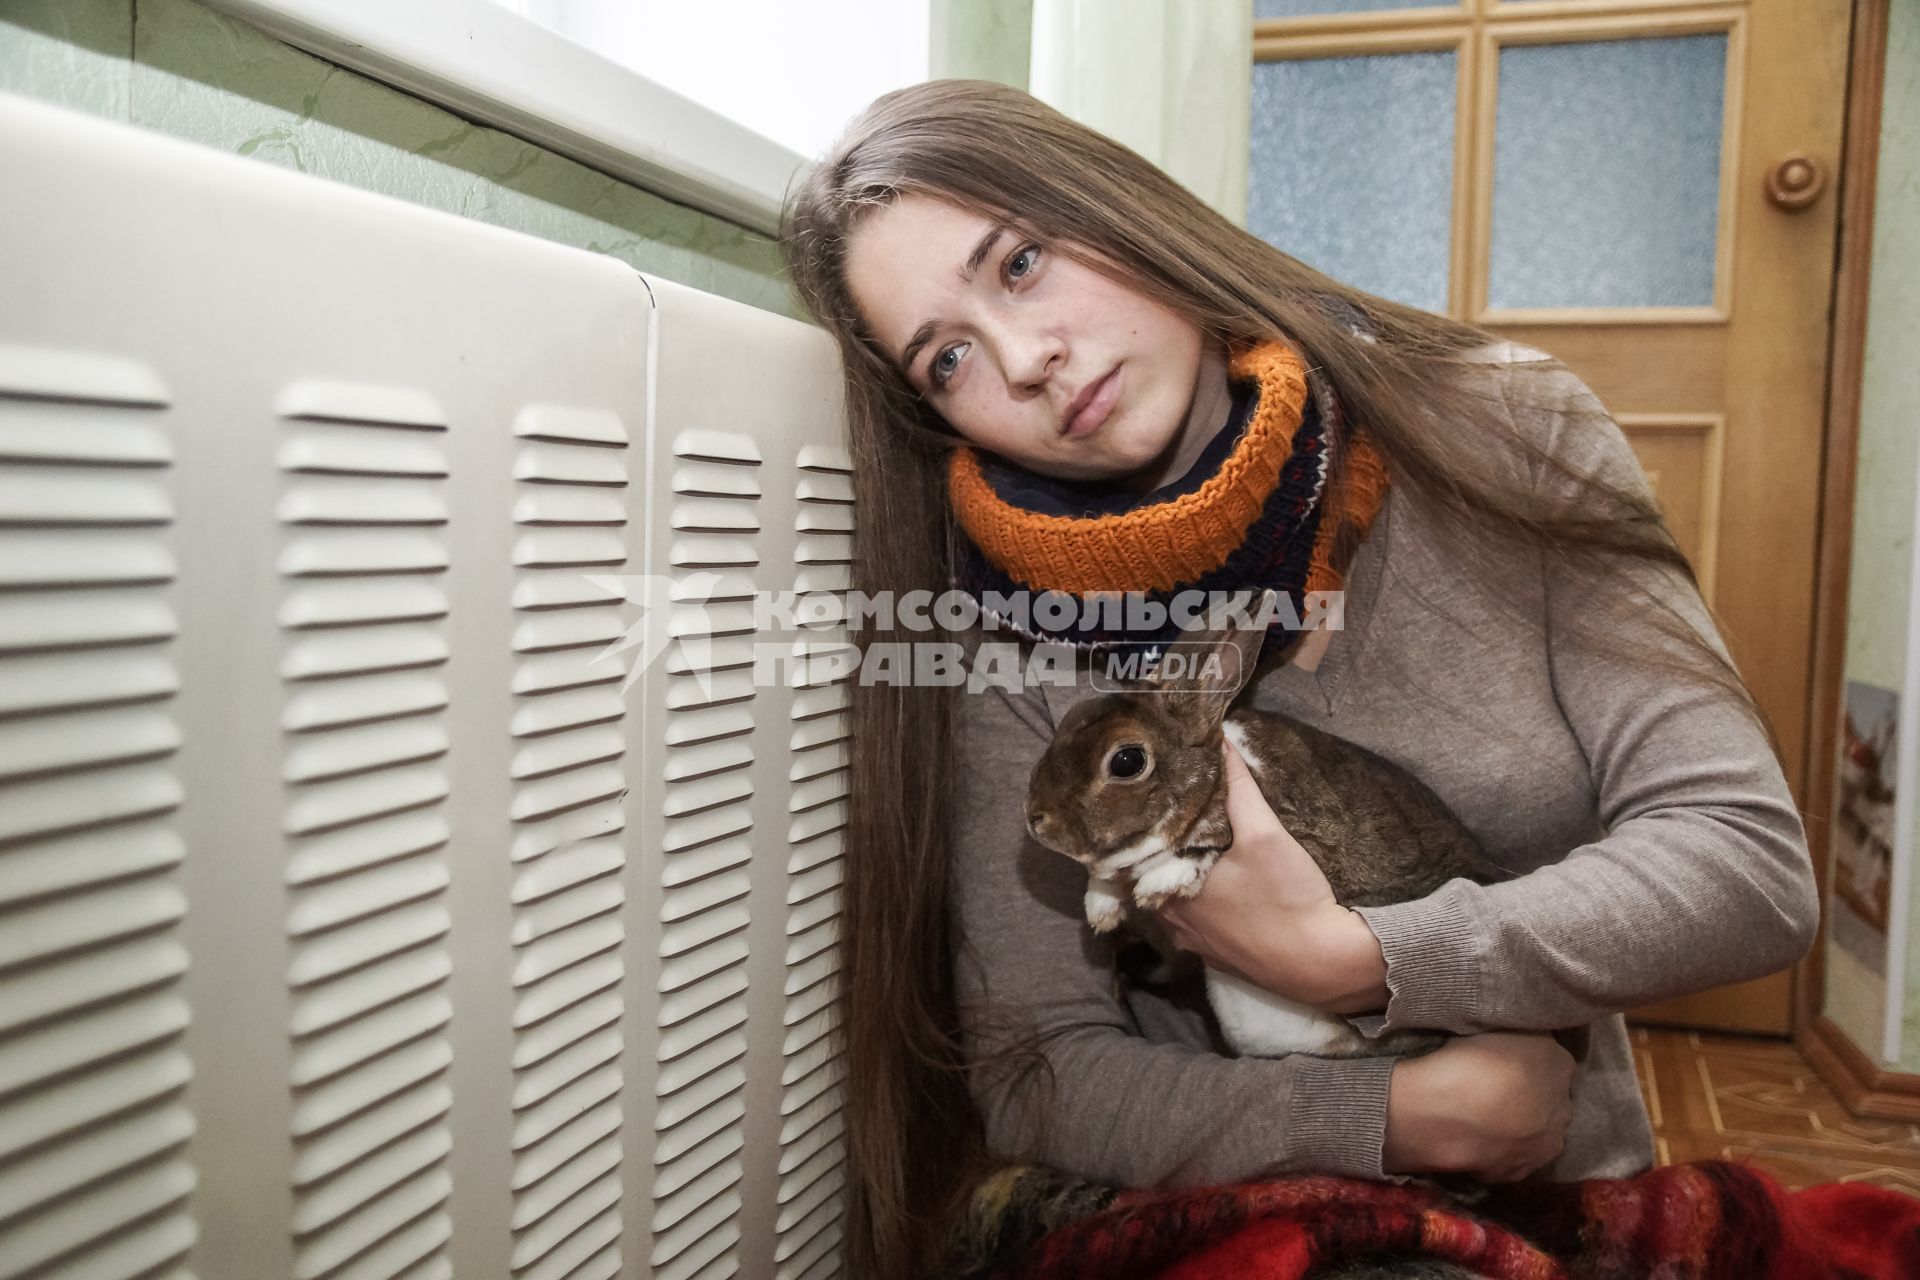 Самара.  Девушка с кроликом   греются у батареи в холодной квартире.